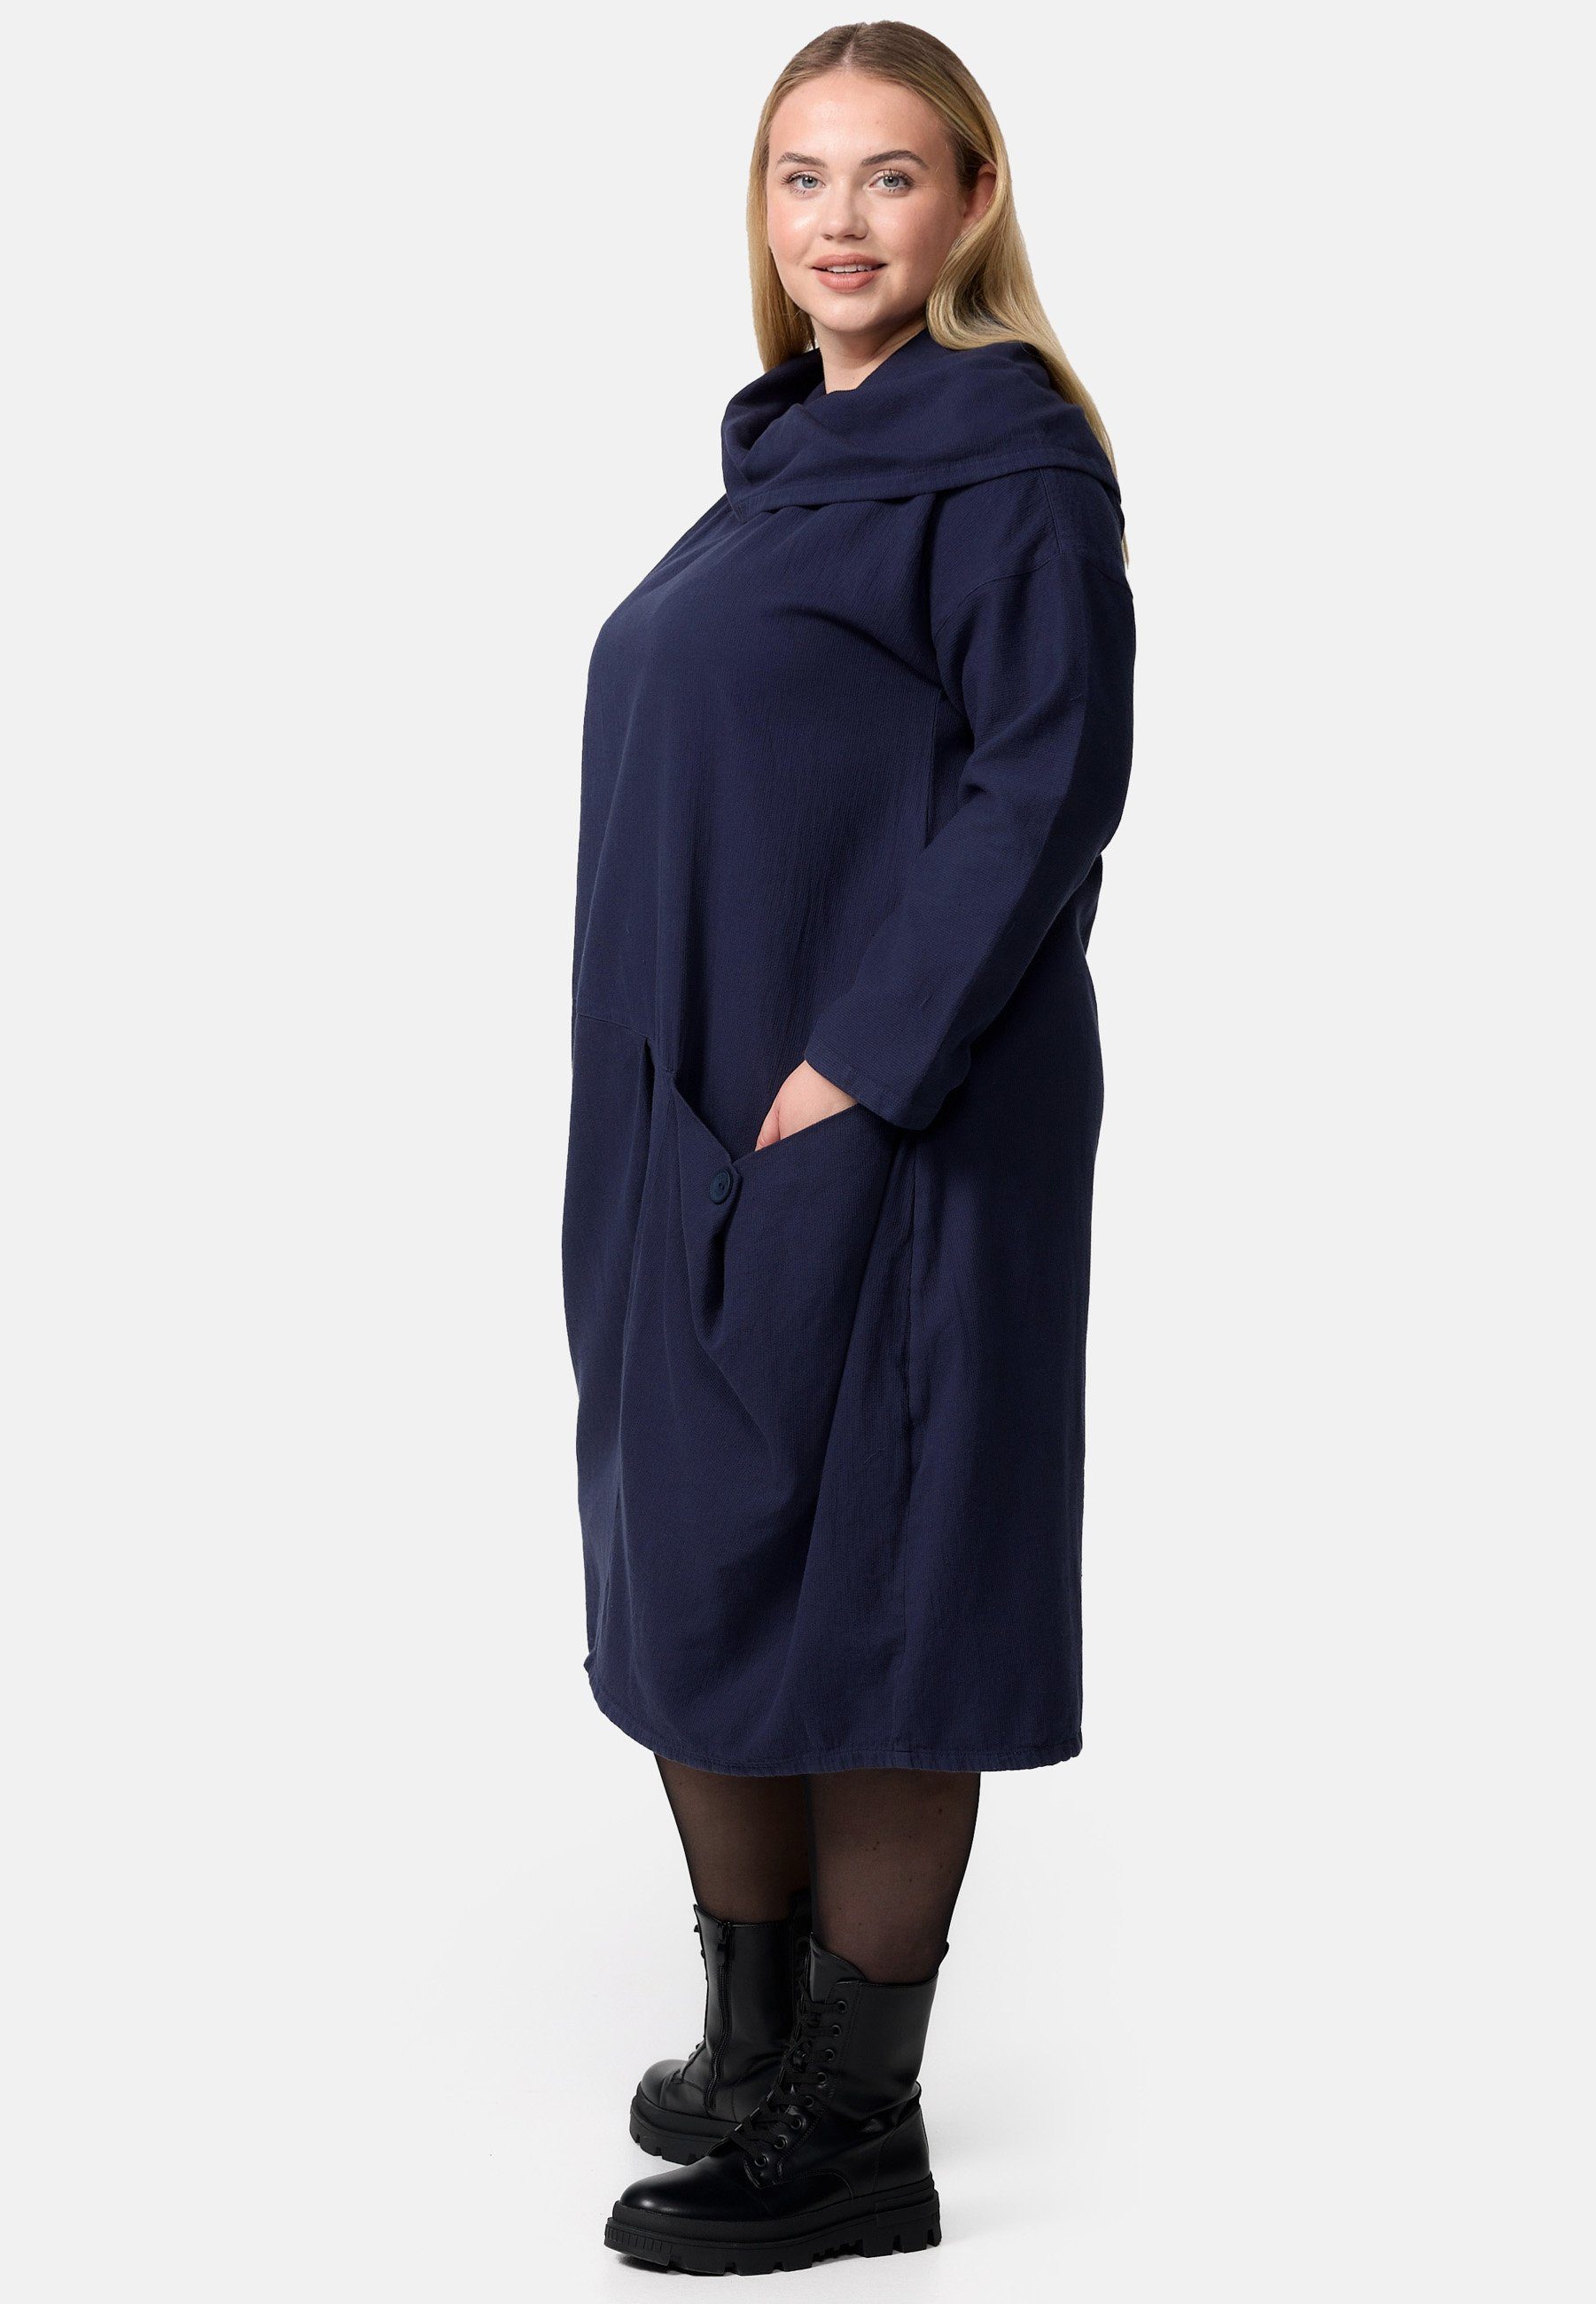 Kekoo A-Linien-Kleid aus in A-Linie 'Sienna' Cord-Kleid Baumwolle 100% Navy